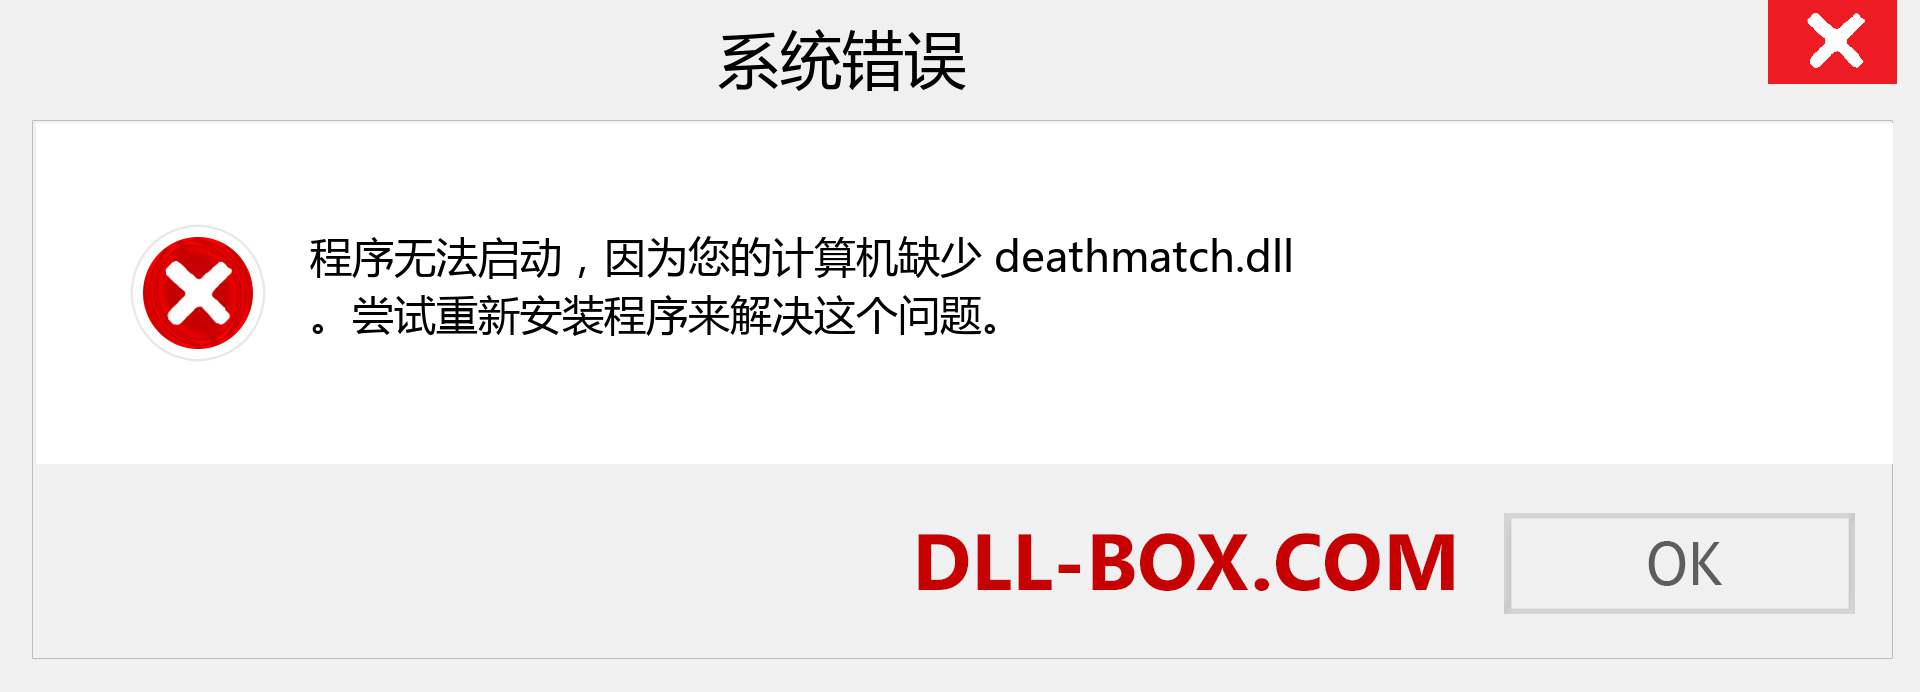 deathmatch.dll 文件丢失？。 适用于 Windows 7、8、10 的下载 - 修复 Windows、照片、图像上的 deathmatch dll 丢失错误